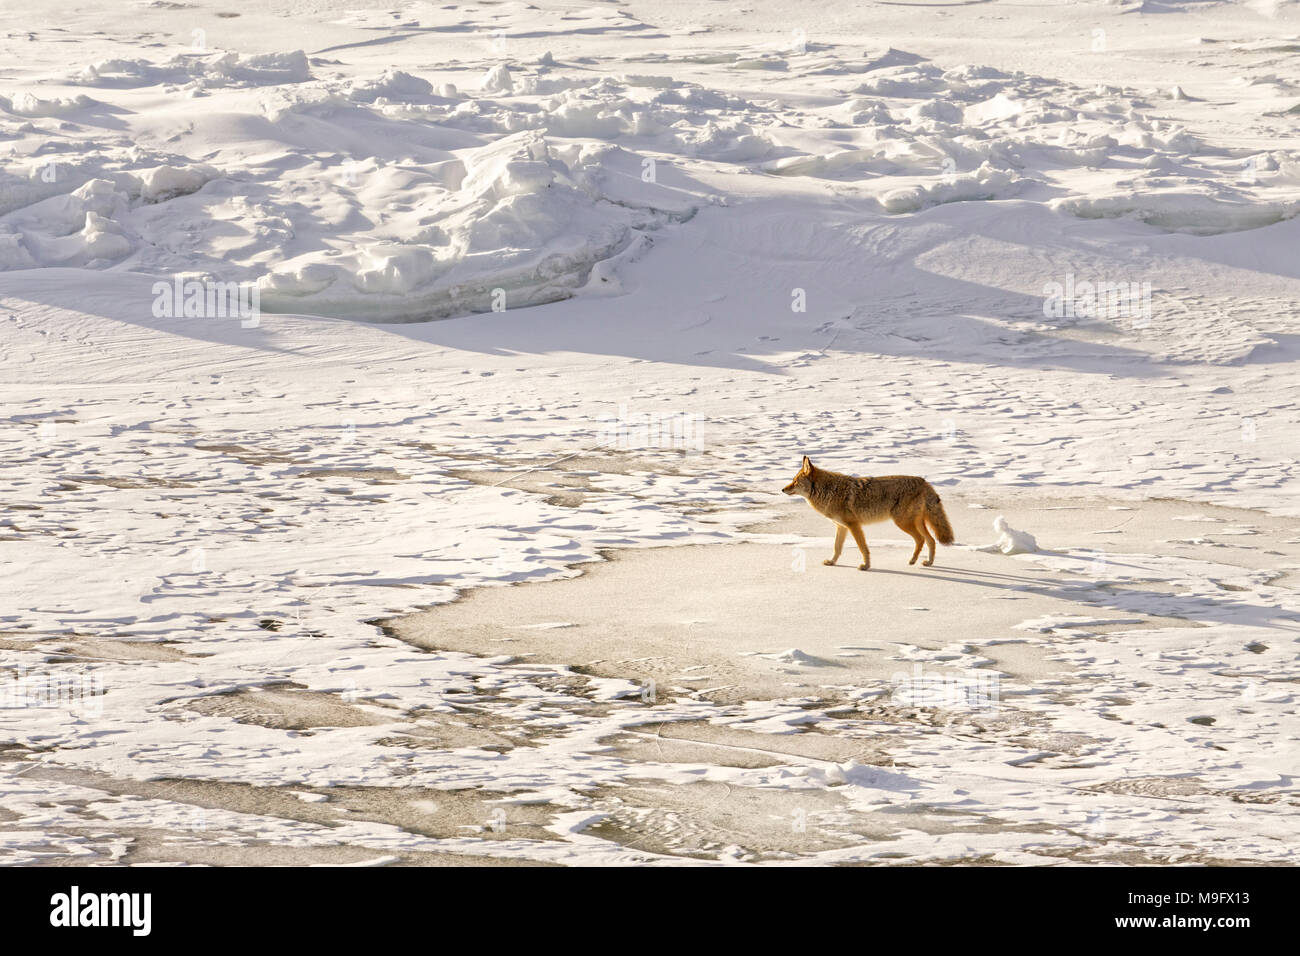 42 748,08764 un coyote dans sun marche sur une rivière gelée recouverte de neige Banque D'Images